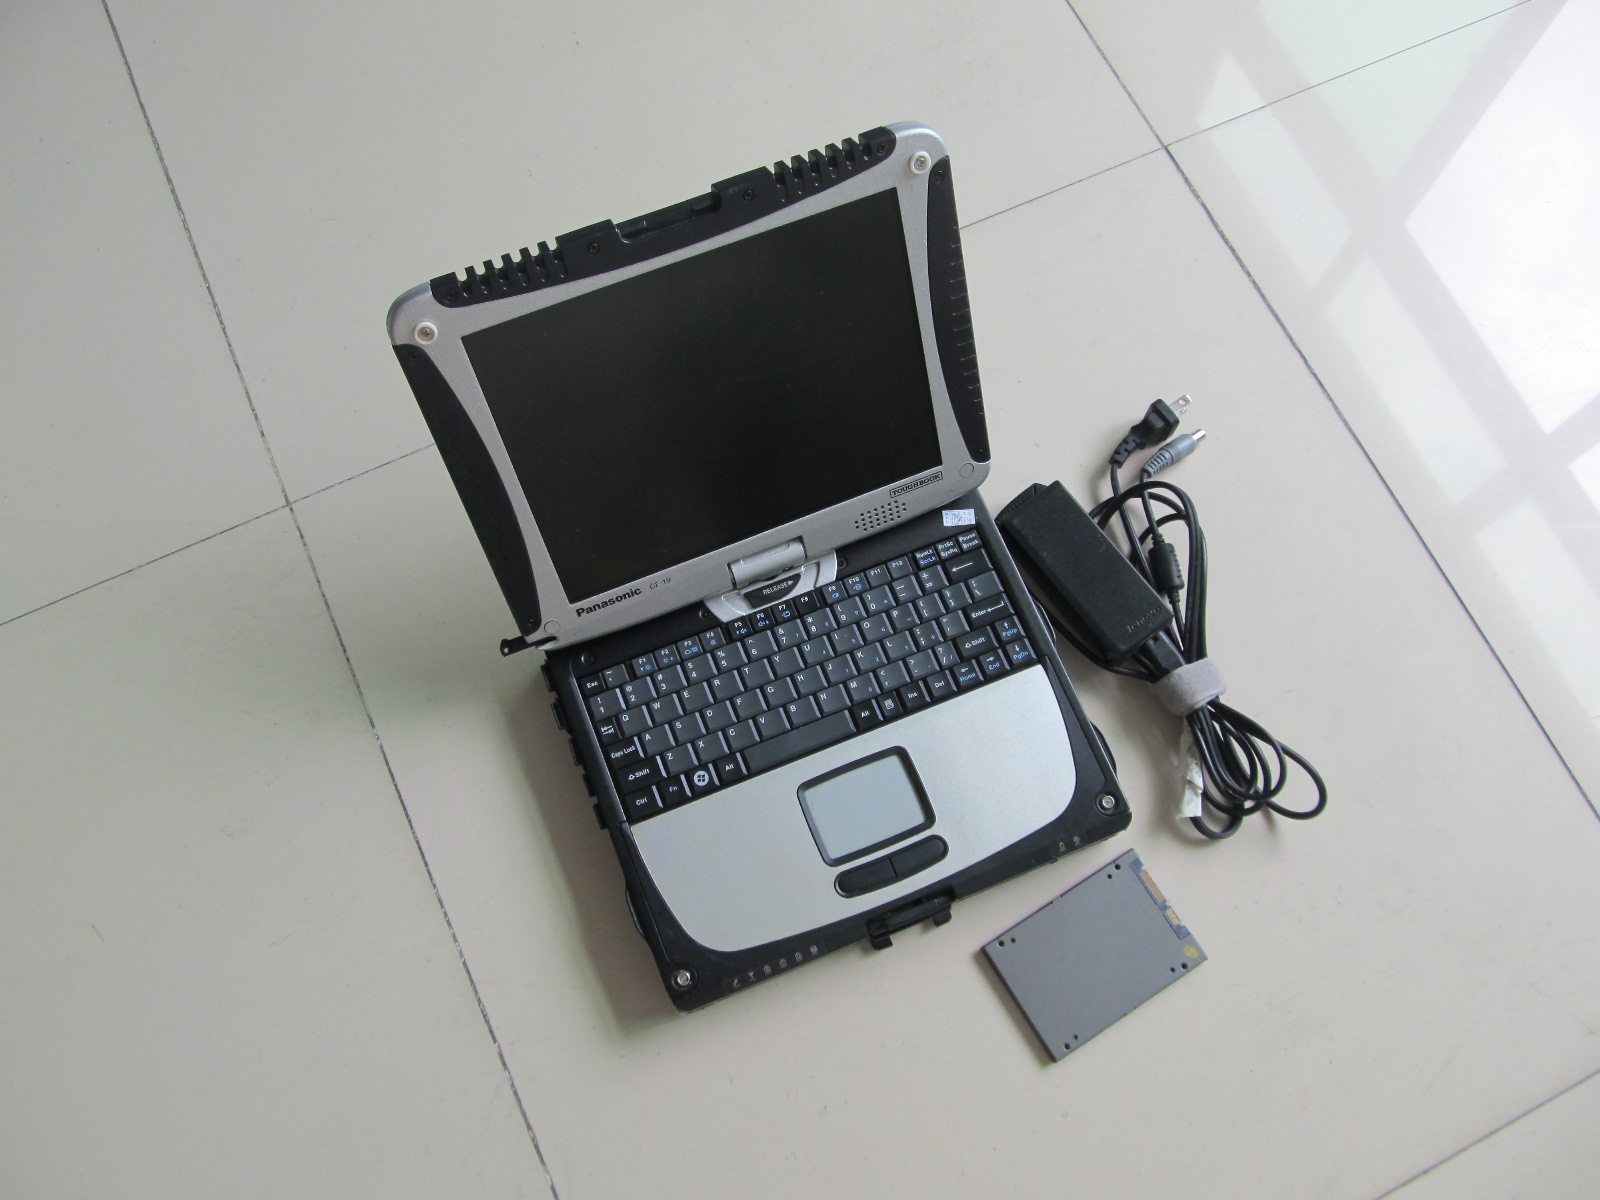 MB star c3 diagnostisch hulpmiddel met laptop cf19 touchscreen super ssd stoerbook ram 4g klaar voor gebruik